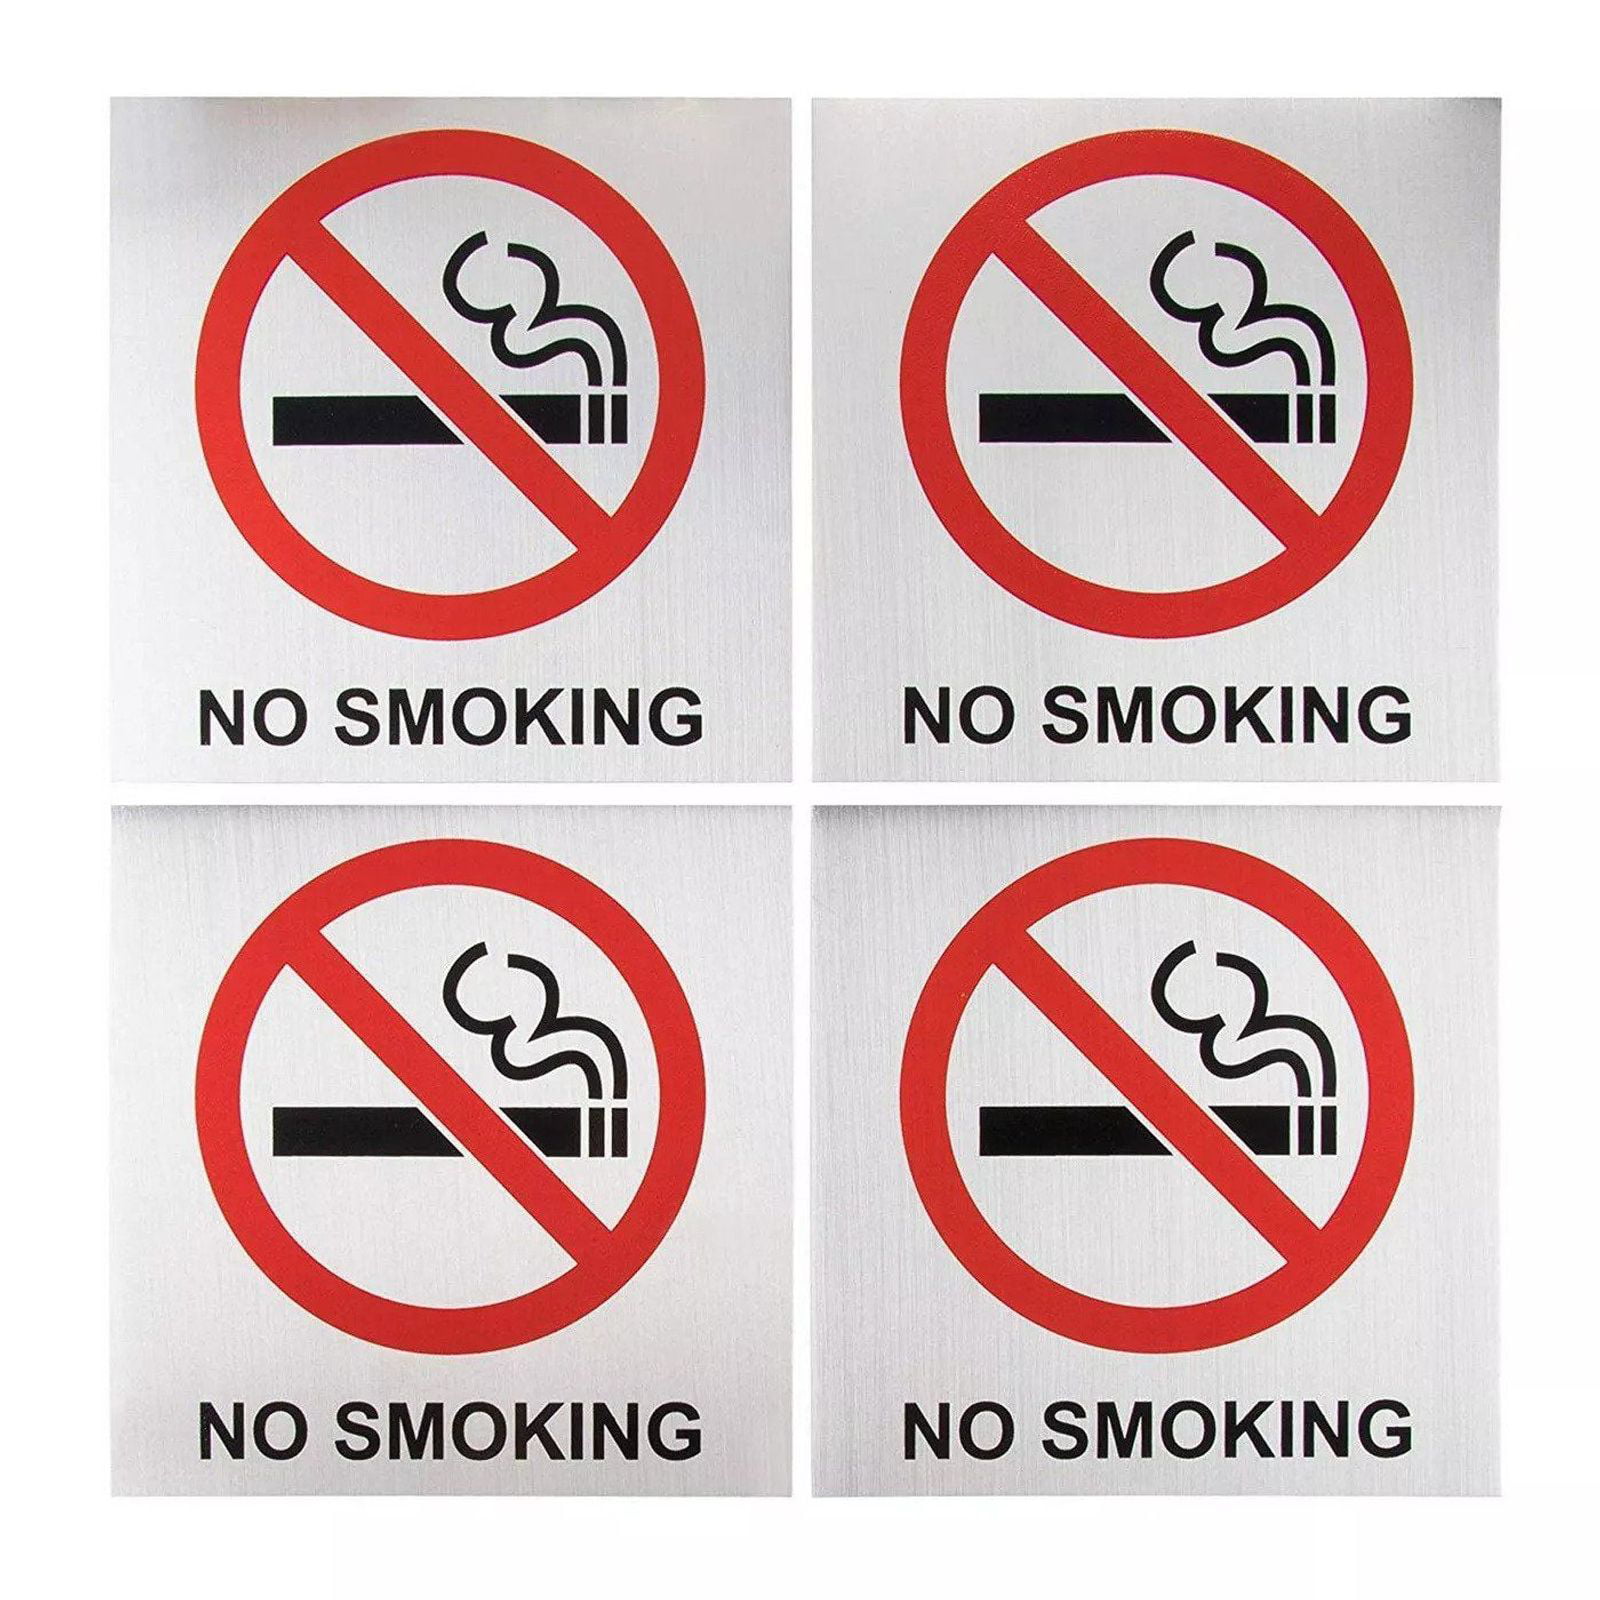 NO SMOKING ALLOWED IN MY GARAGE Warning Metal Aluminum Sign 